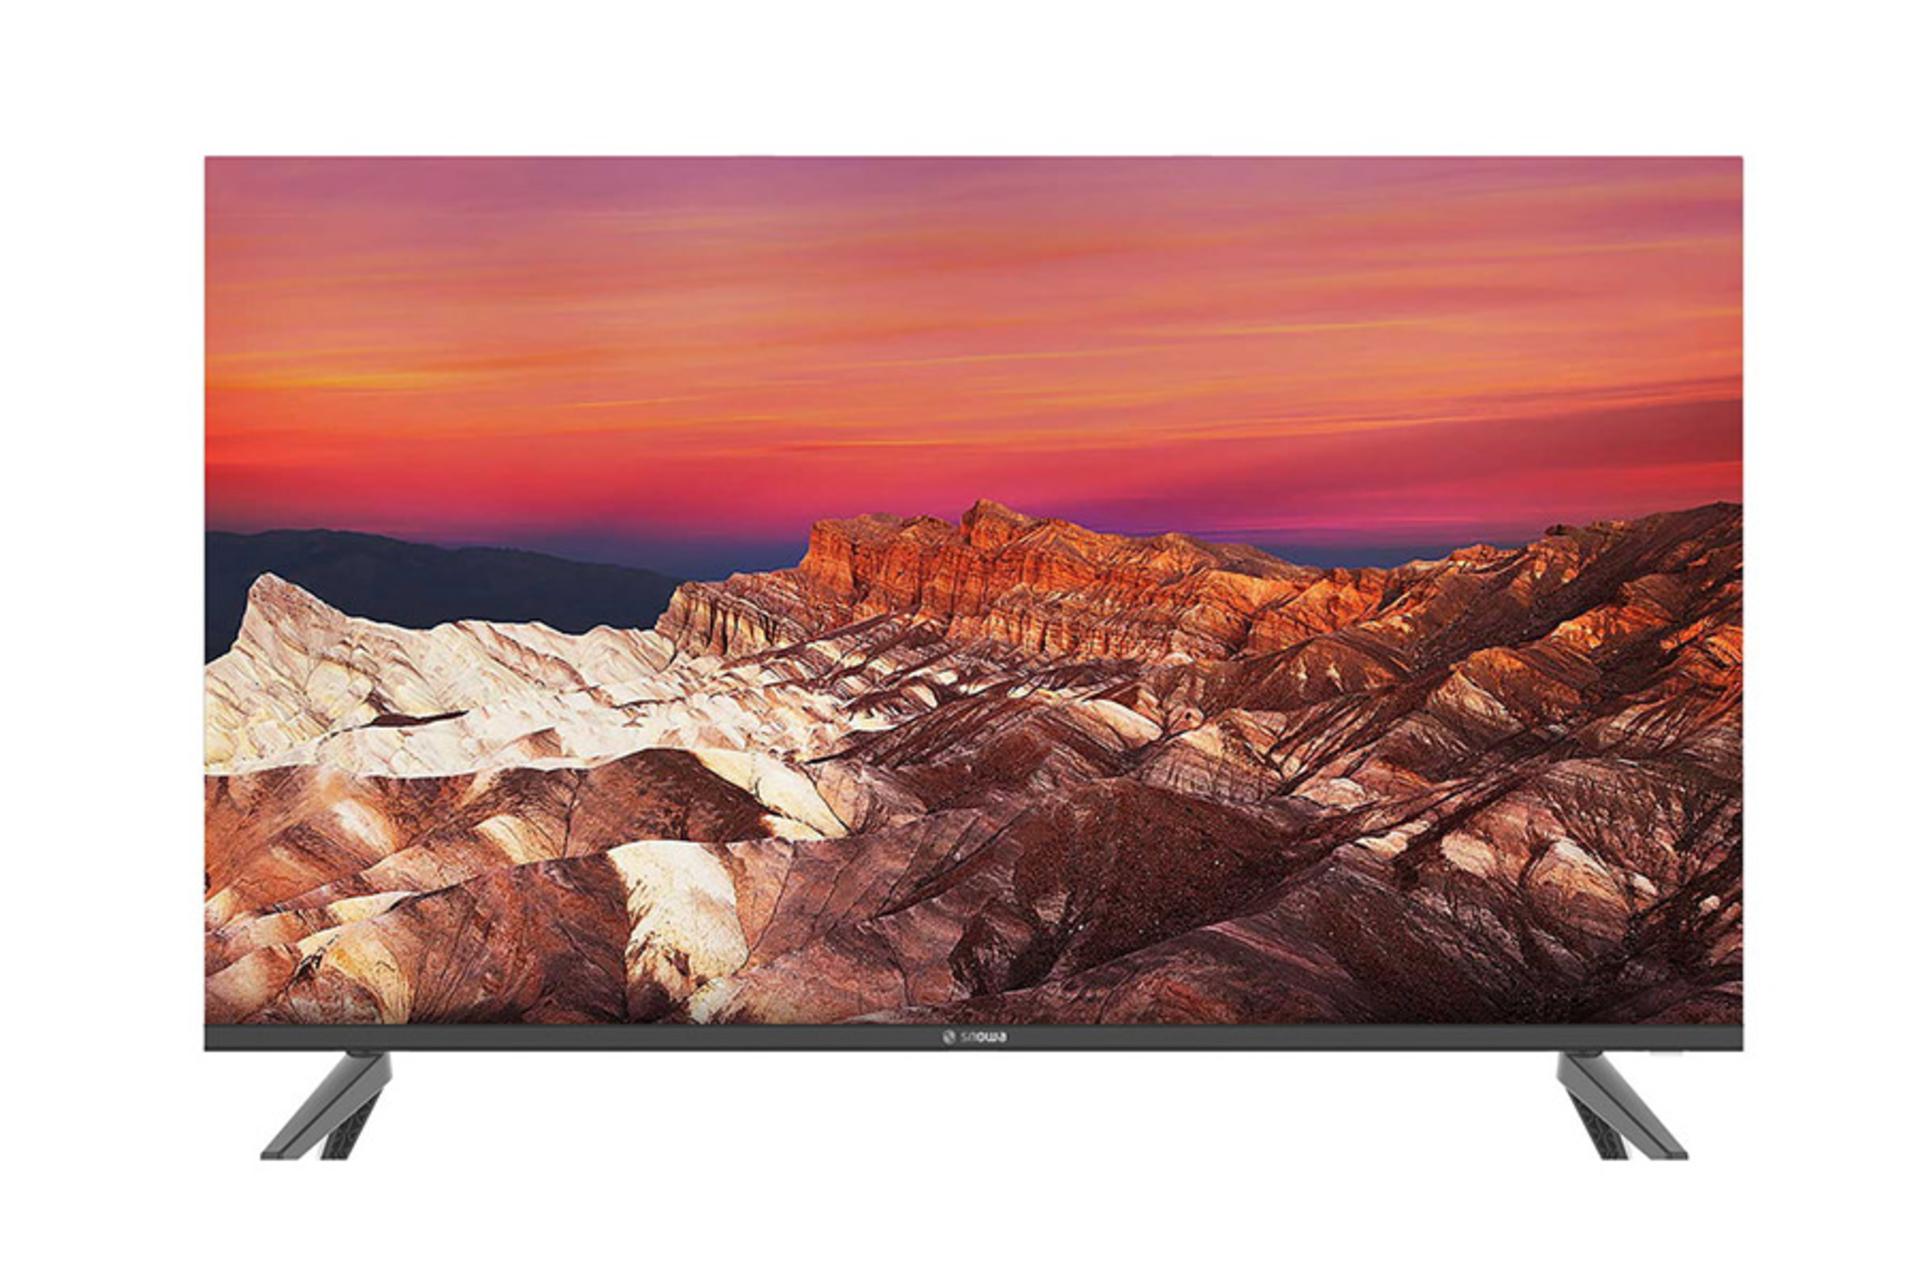 قیمت تلویزیون اسنوا SA630U مدل 50 اینچ + مشخصات